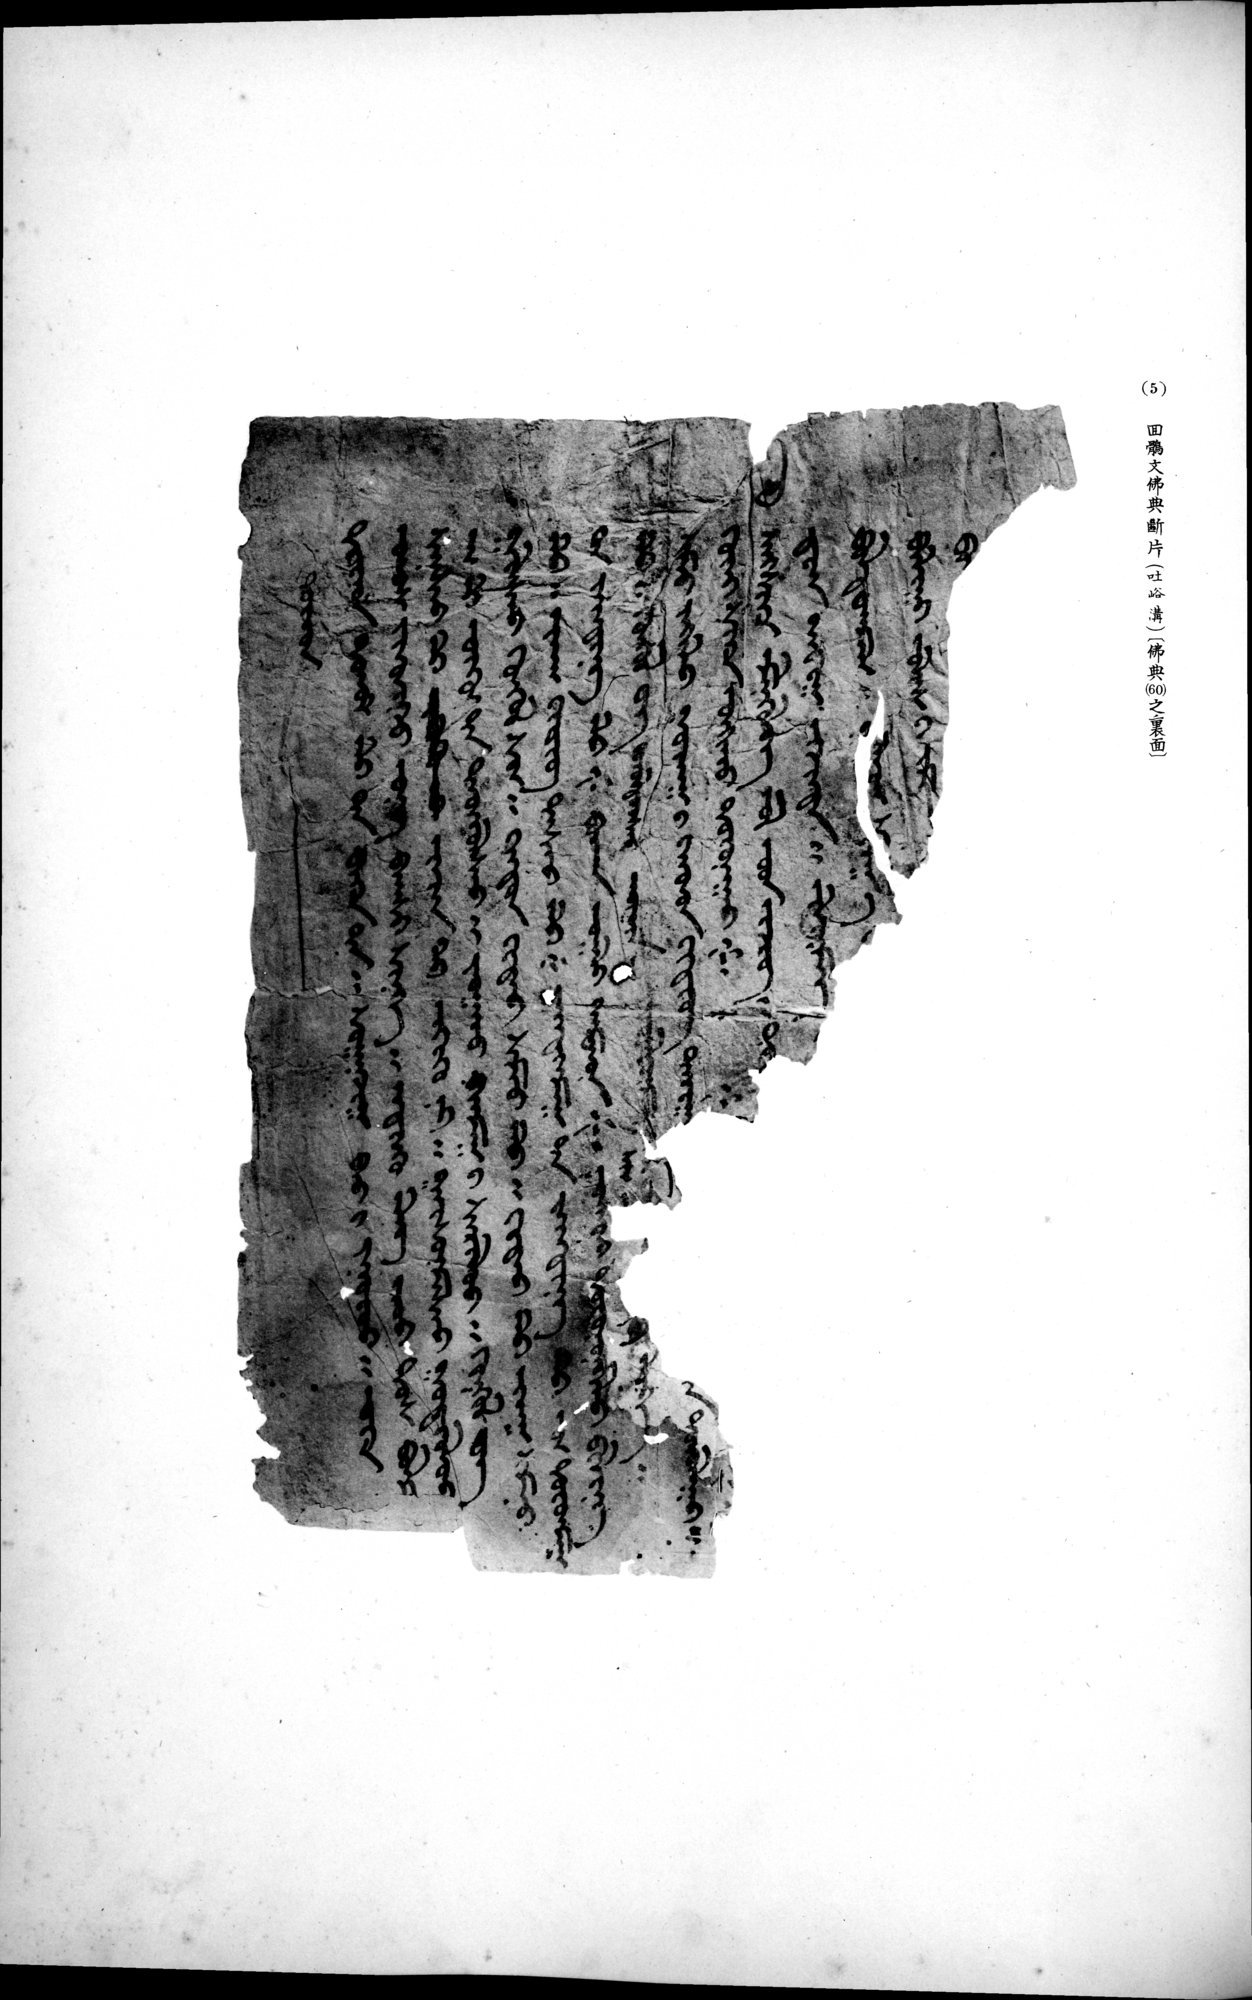 西域考古図譜 : vol.2 / Page 263 (Grayscale High Resolution Image)